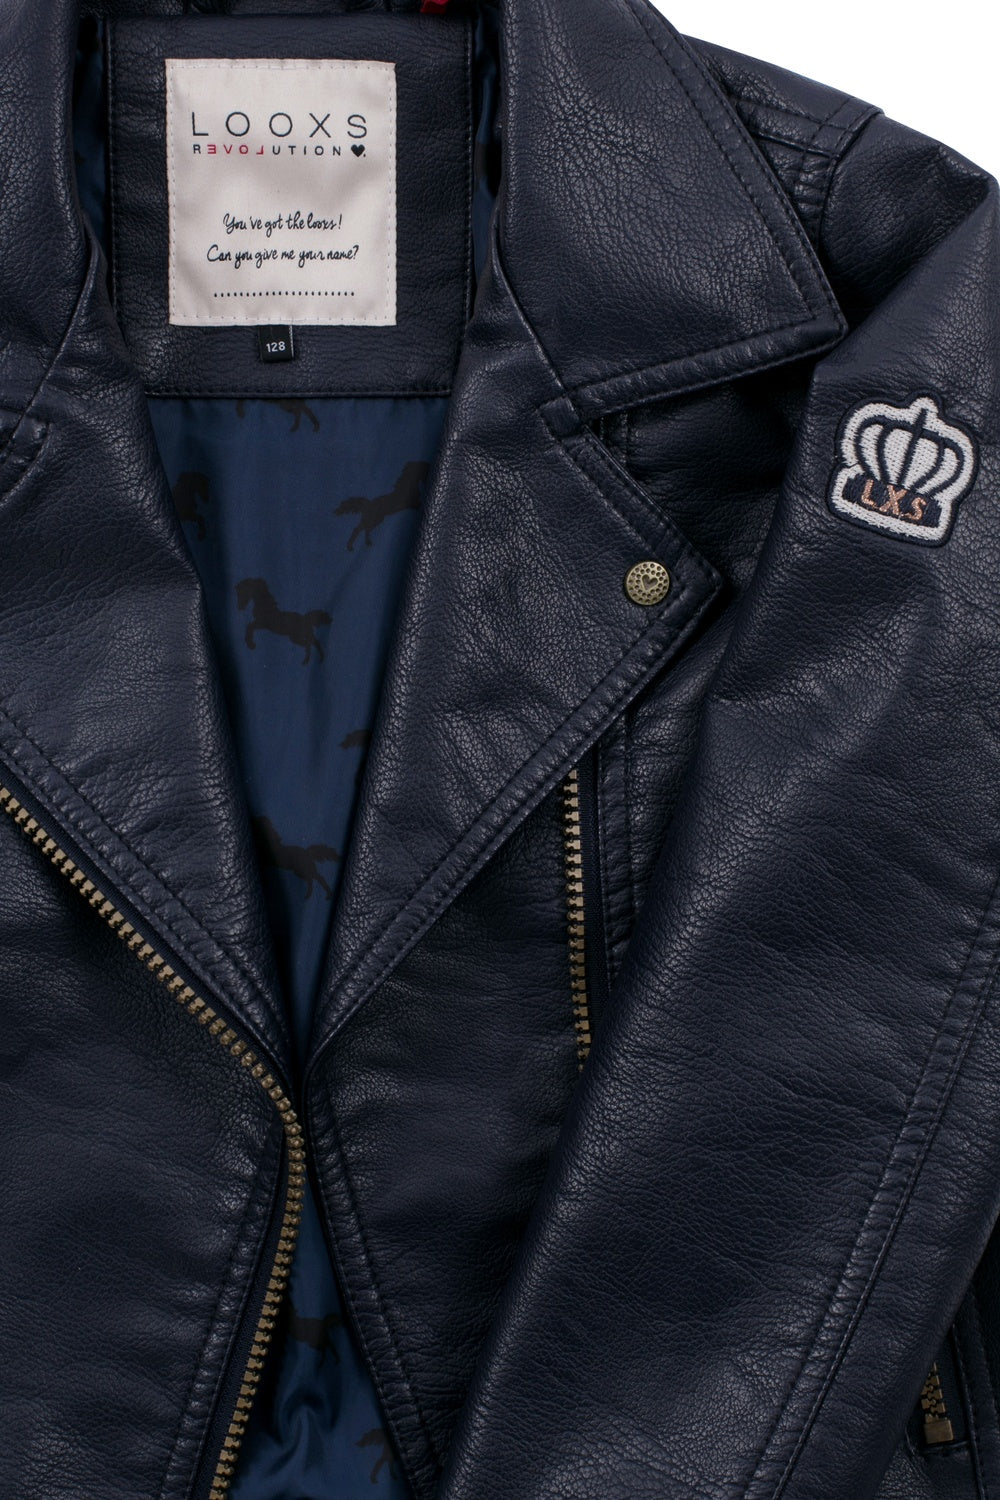 Looxs Revol. Biker jacket imi leather blue